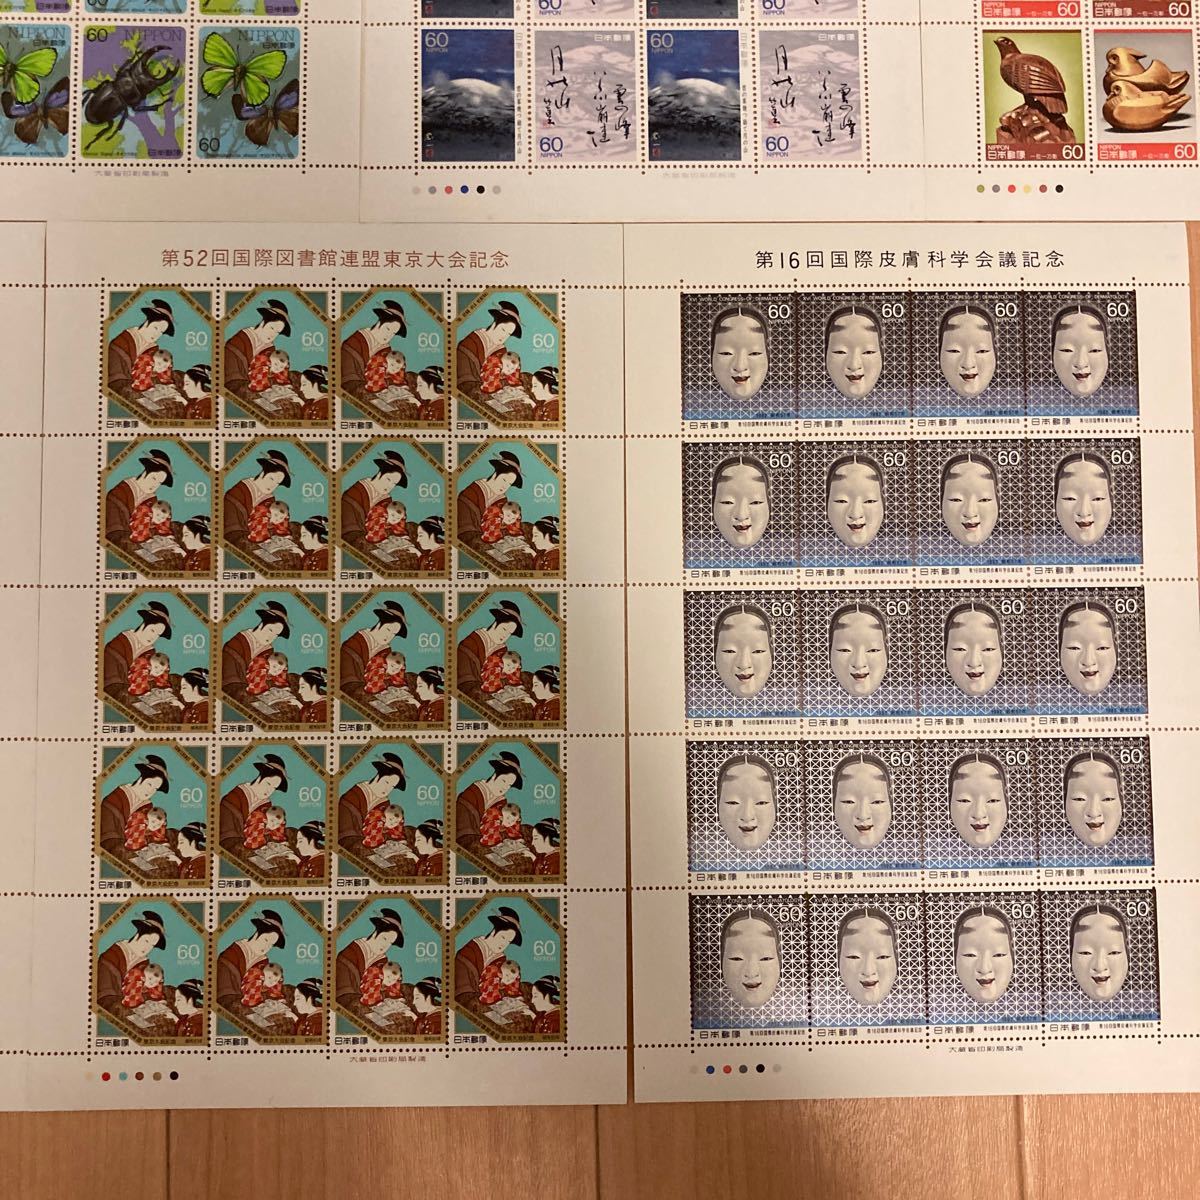 記念切手(奥の細道シリーズほか)9000円